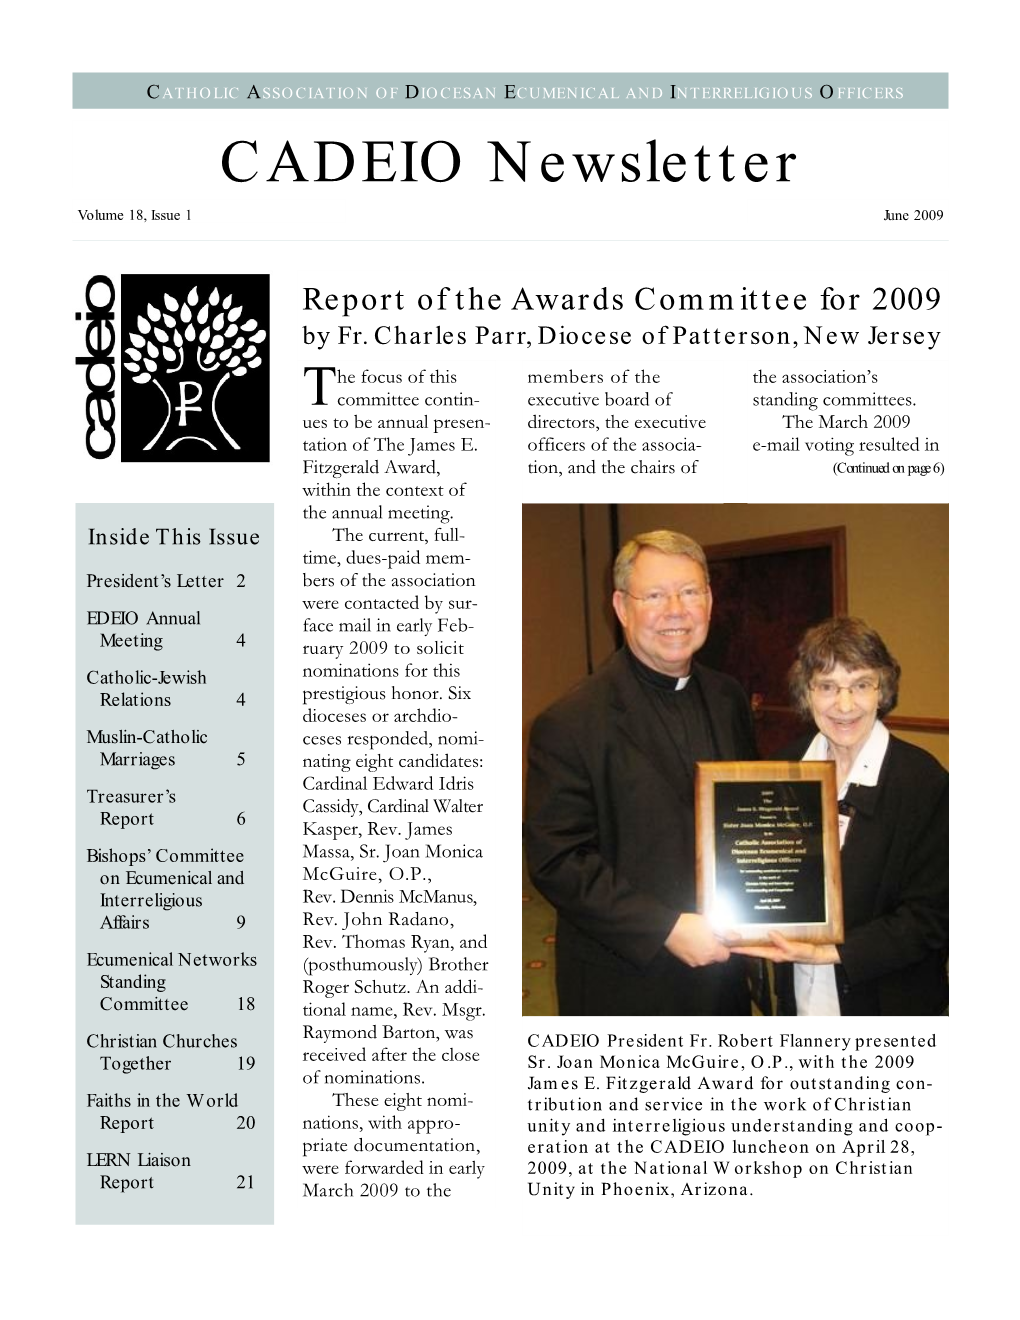 CADEIO Newsletter Volume 18, Issue 1 June 2009